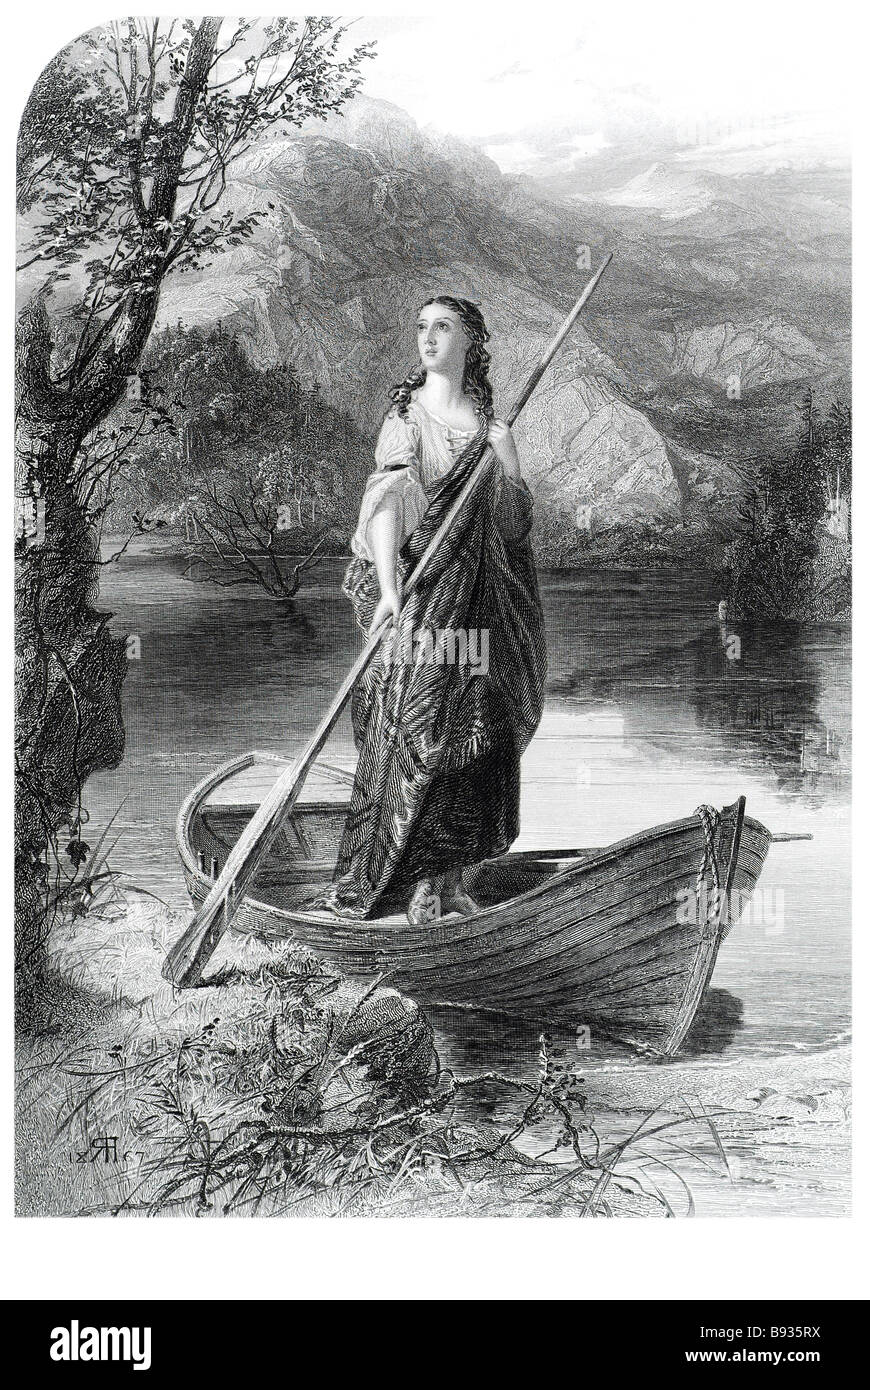 La signora del lago di mito barca a remi acqua shore periodo abito donna campagna bosco selvatico manto della banca la signora del lago i Foto Stock